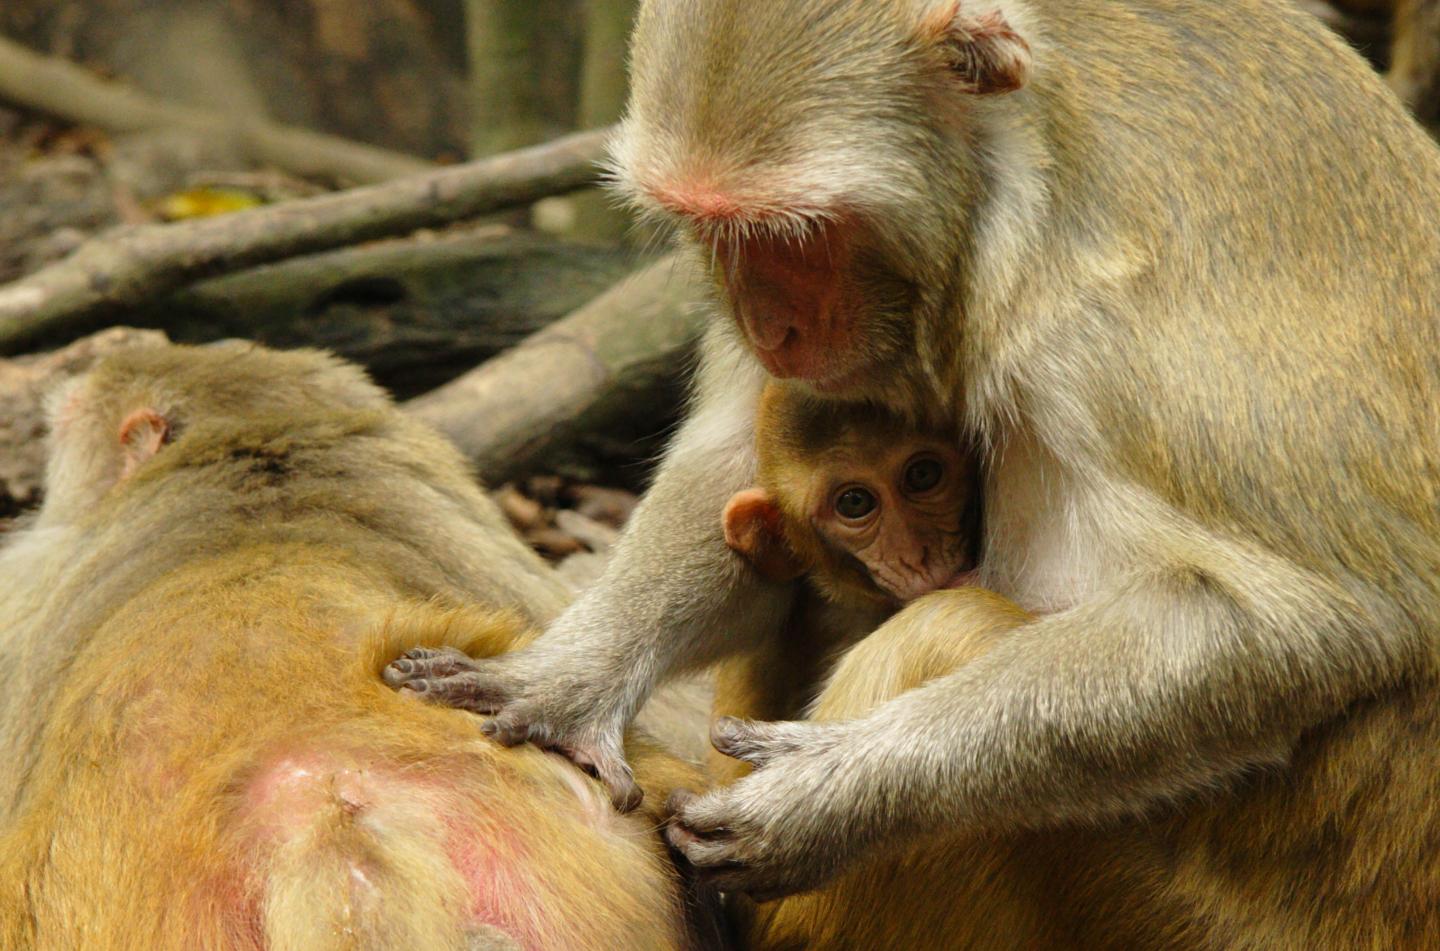 Grooming Rhesus monkeys